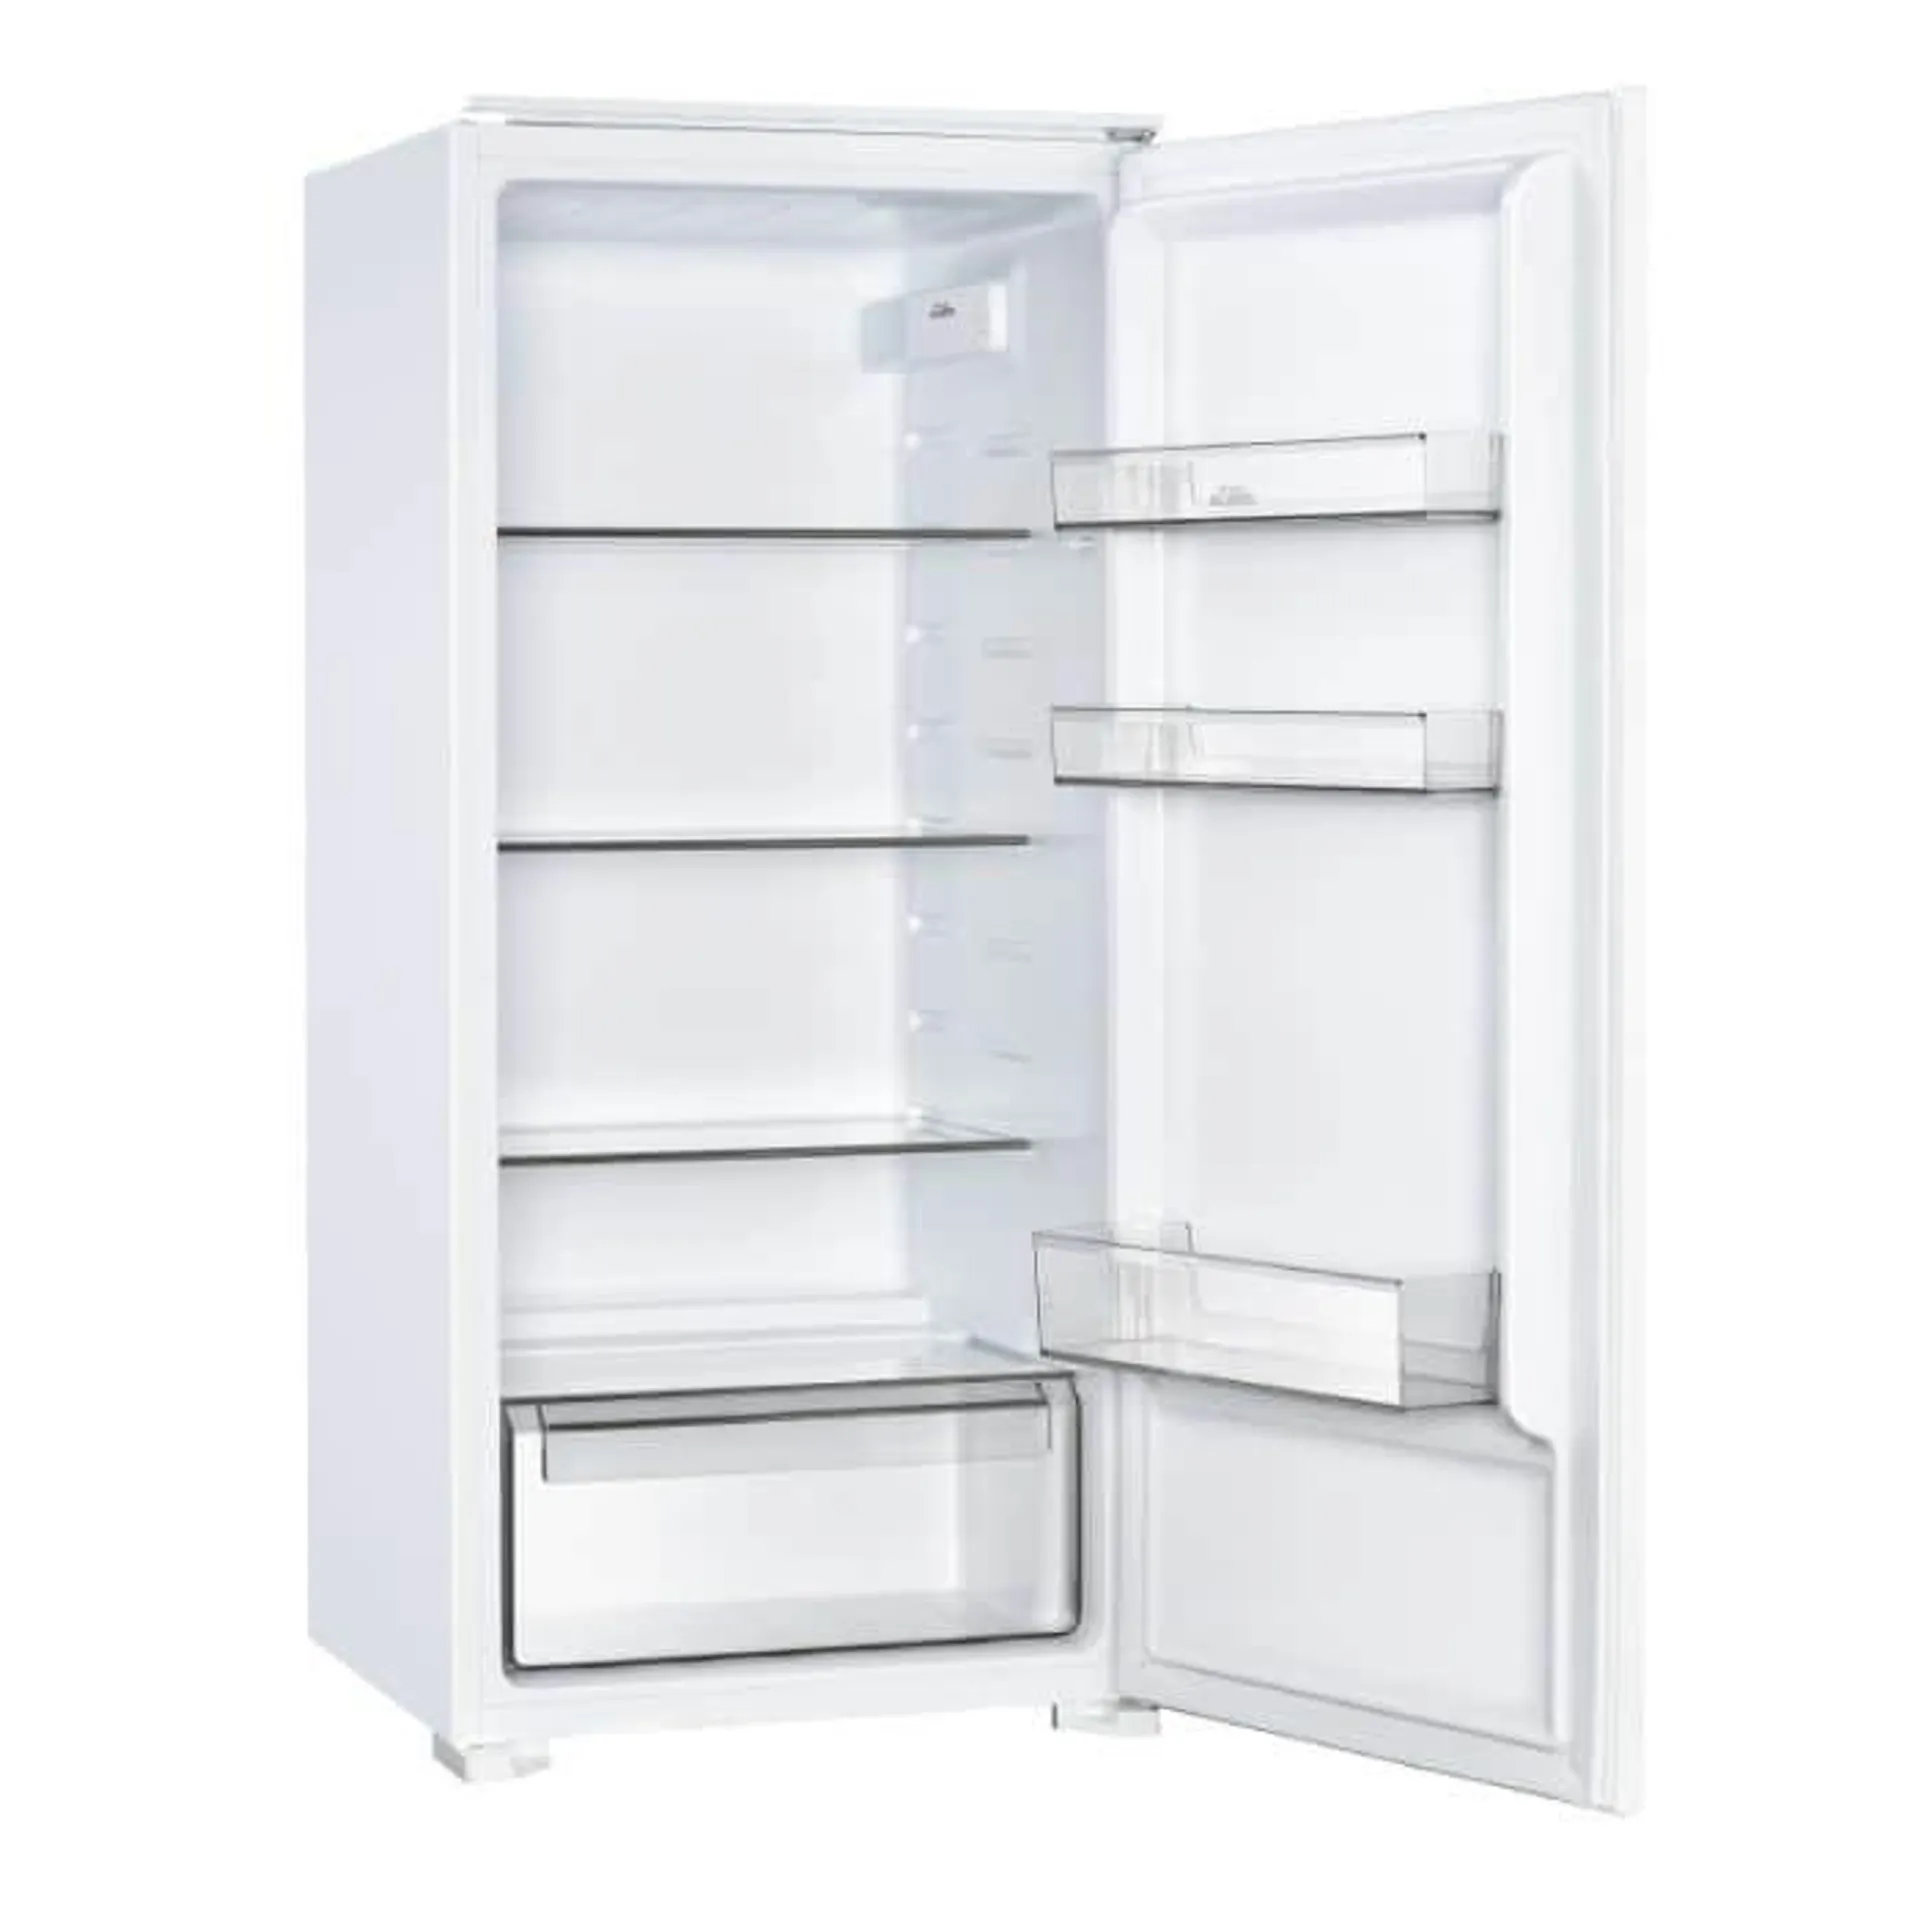 Réfrigérateur intégrable 1 porte VALBERG BI 1D 199 F W742C